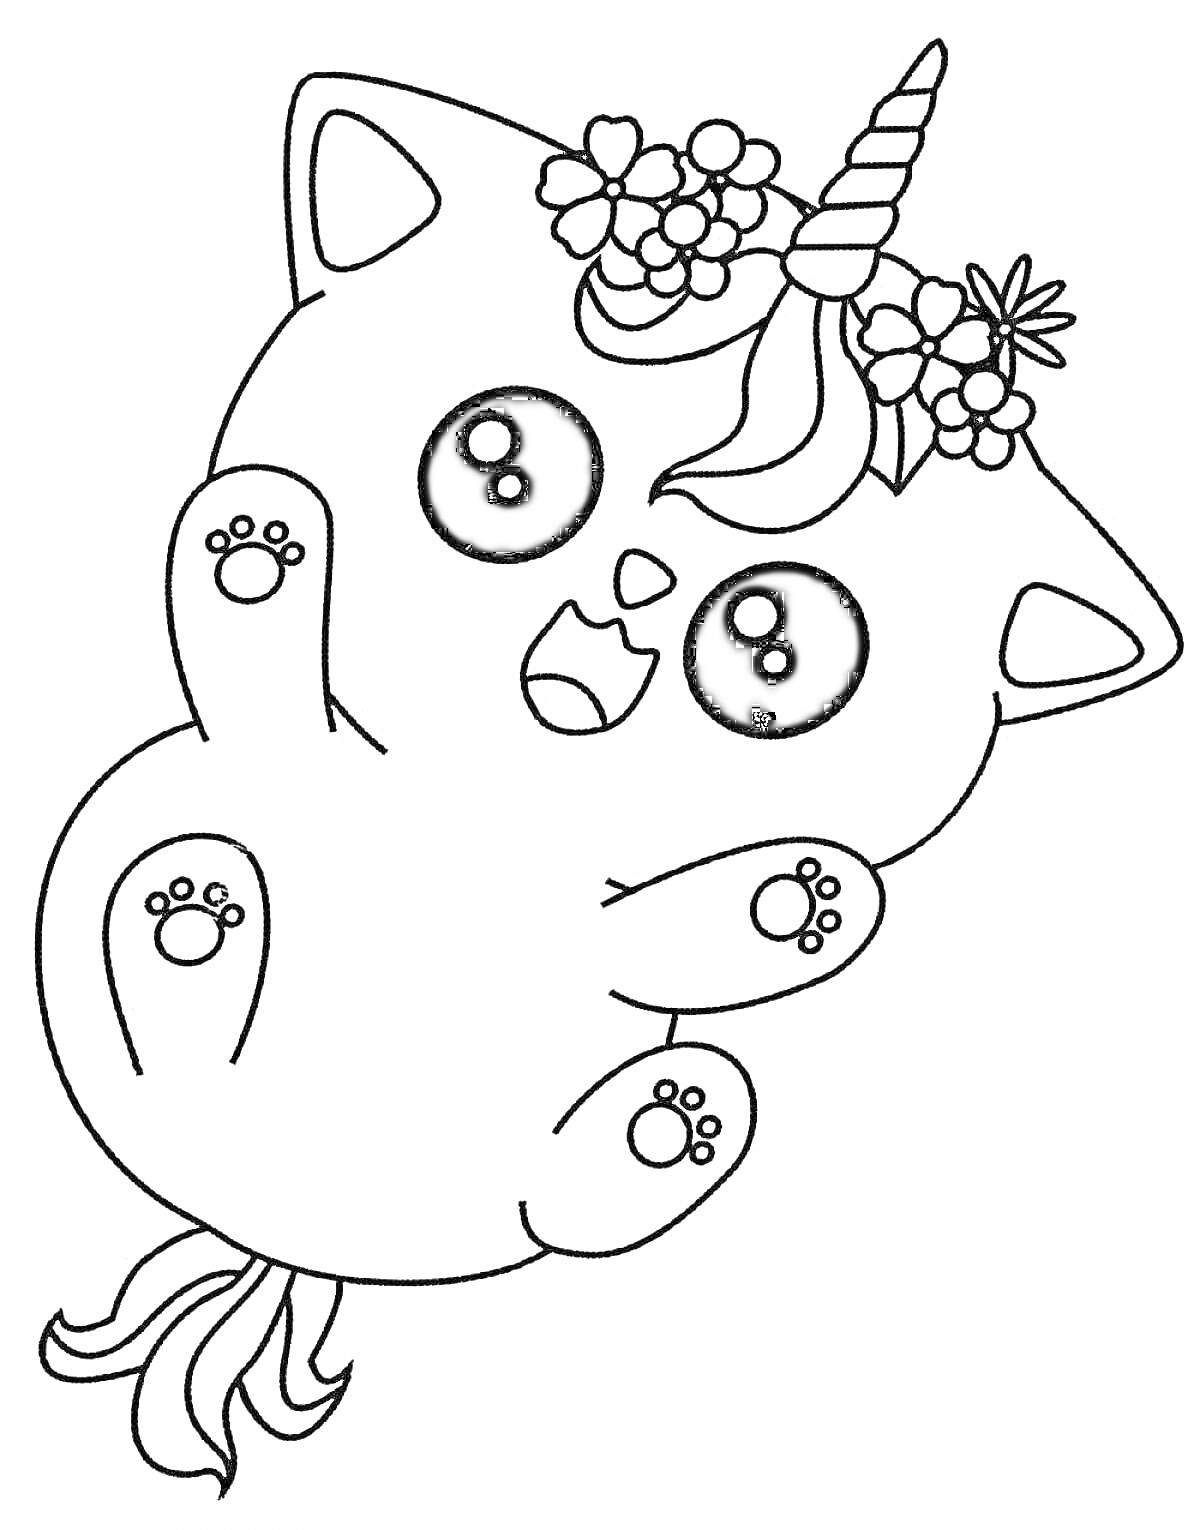 кот-единорог с большими глазами, цветочным венком и хвостом русалки